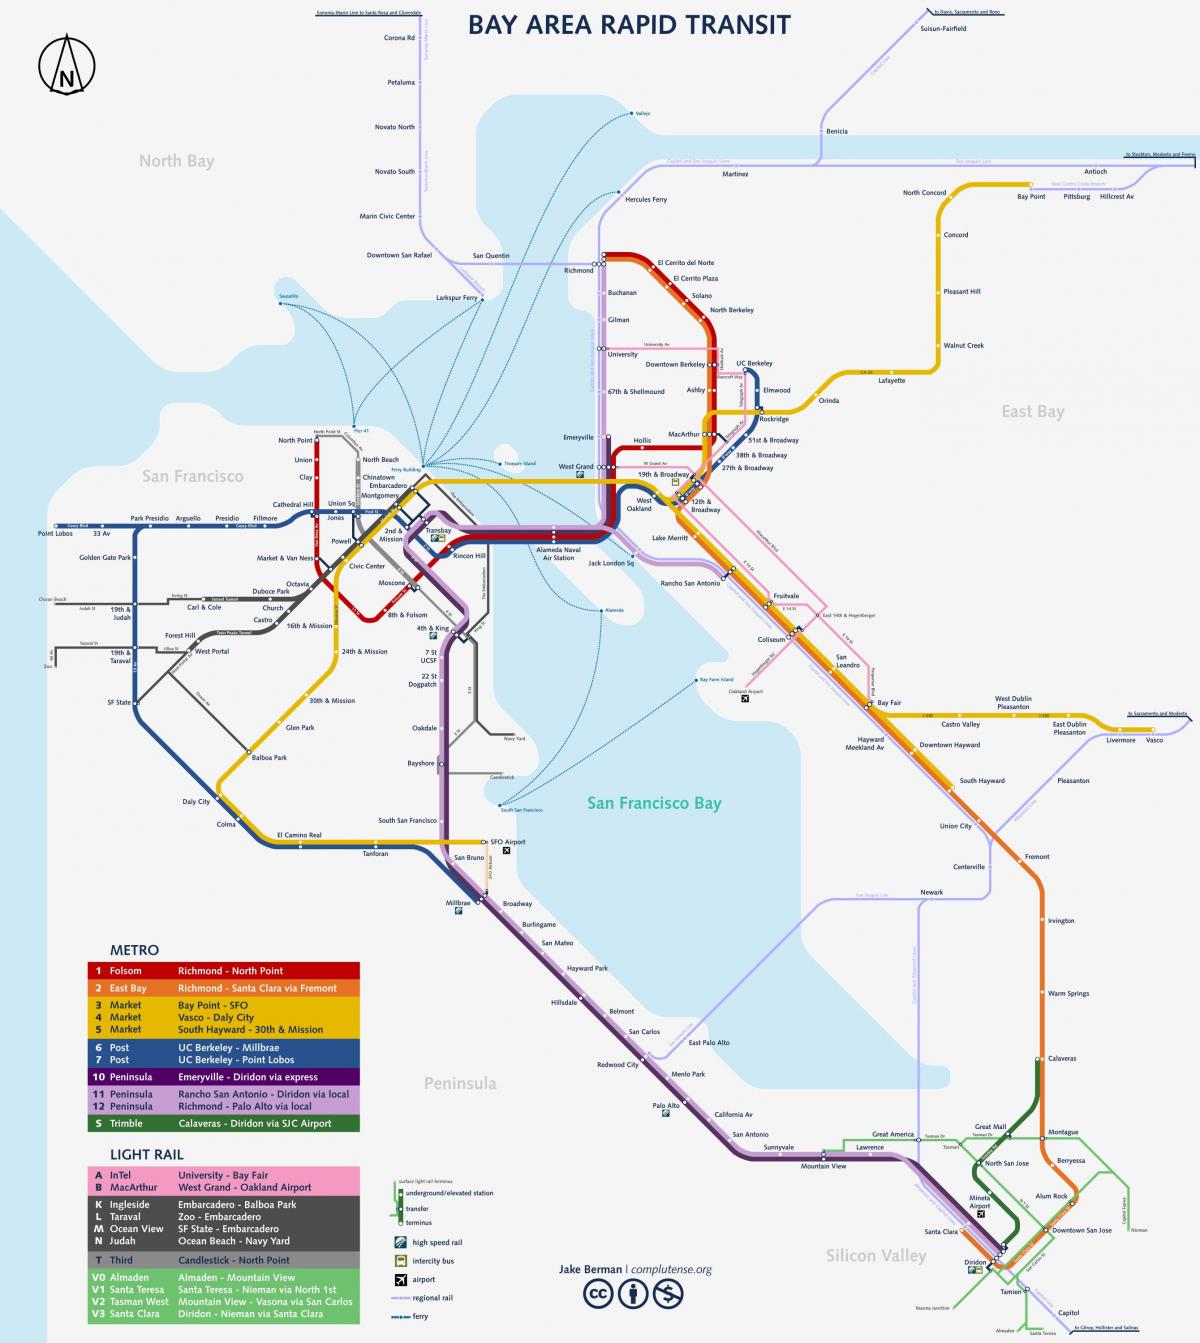 सैन फ्रांसिस्को मेट्रो सिस्टम का नक्शा